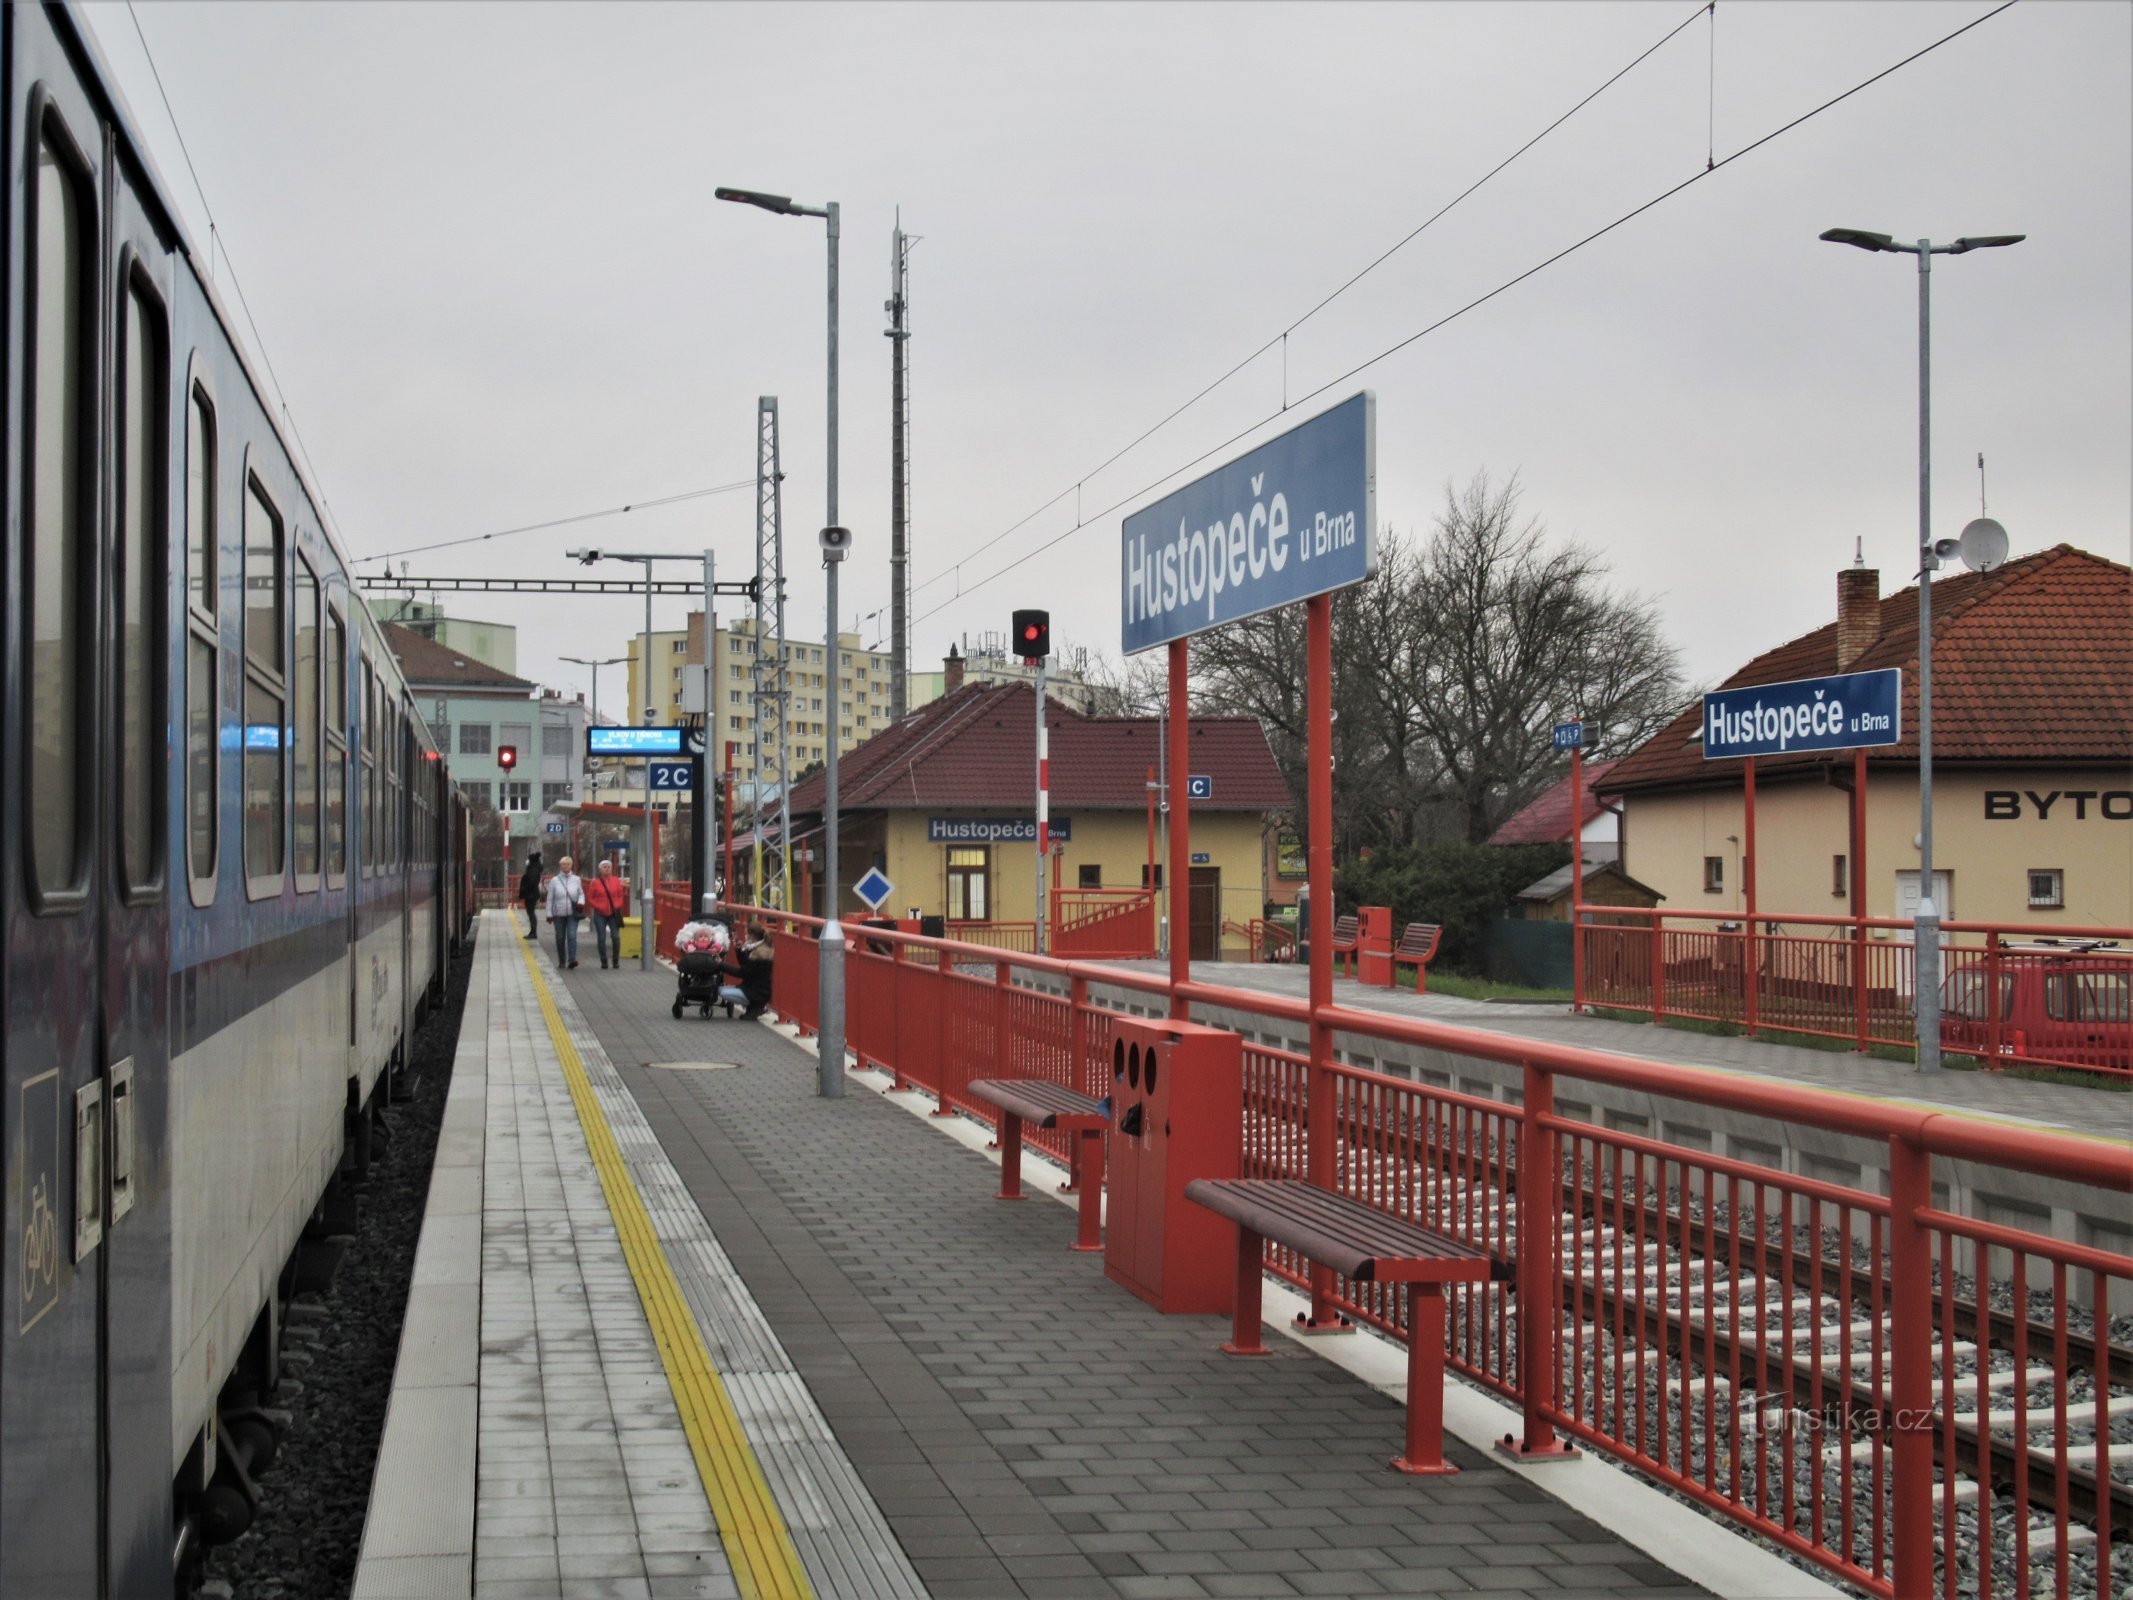 Estação eletrificada recém-inaugurada com chegada de trem em dezembro de 2020